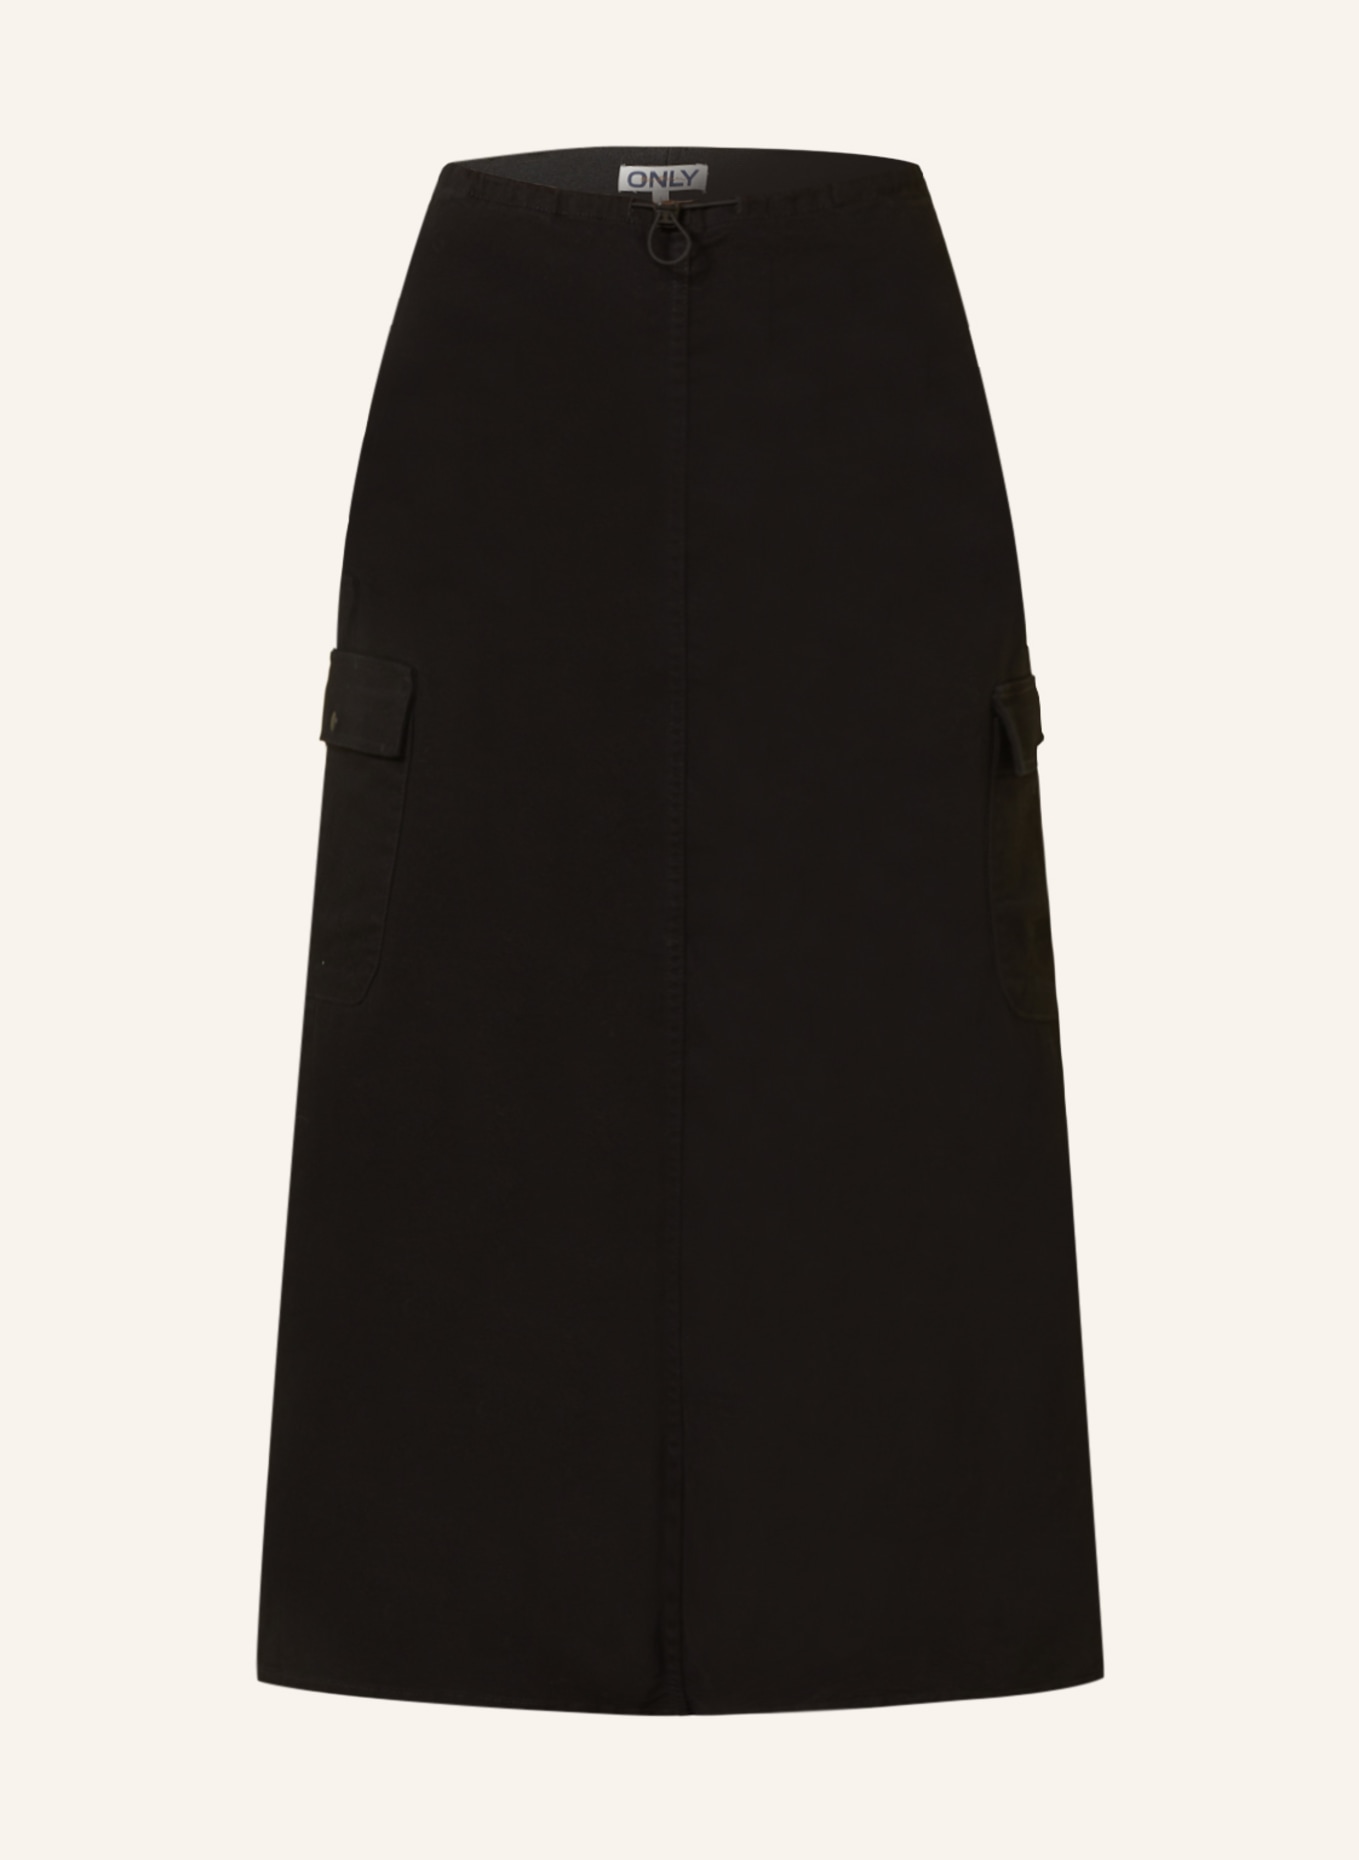 ONLY Denim skirt, Color: BLACK (Image 1)